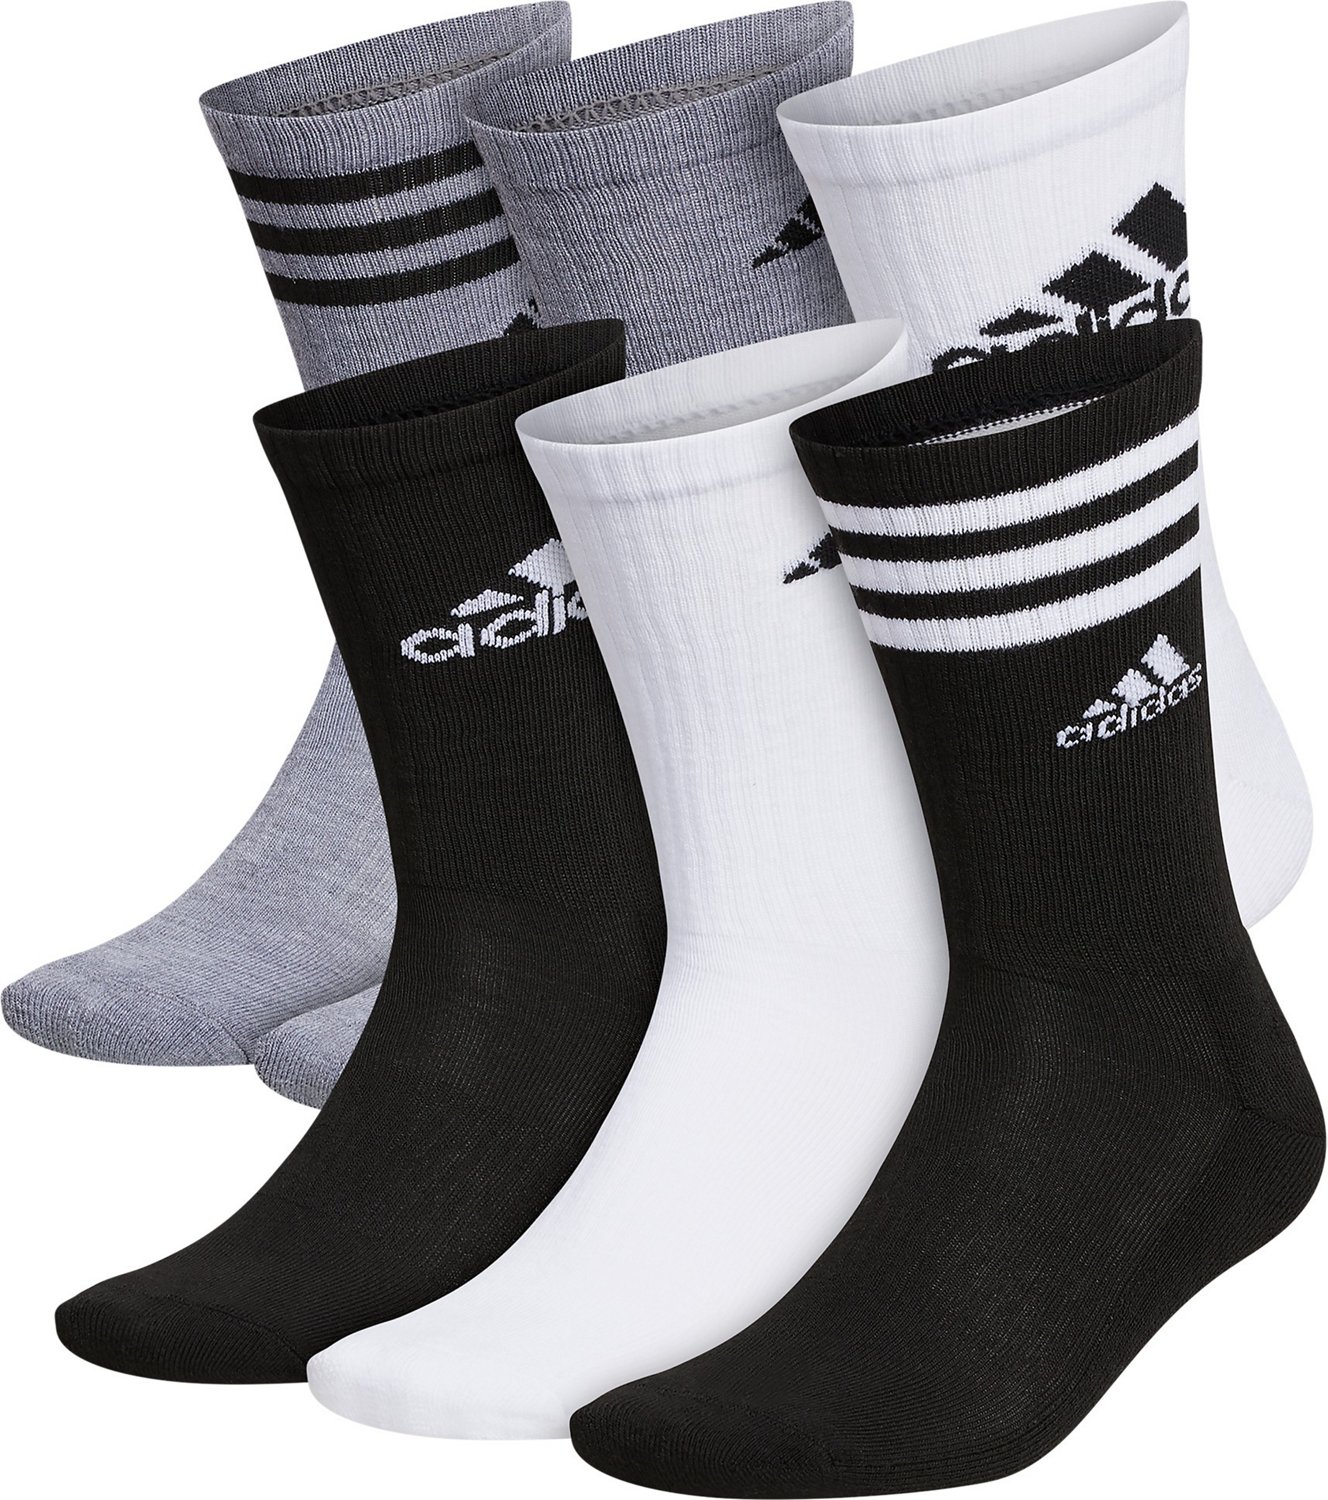 adidas Cushion Mixed Crew Socks 6 Pack | Free Shipping at Academy